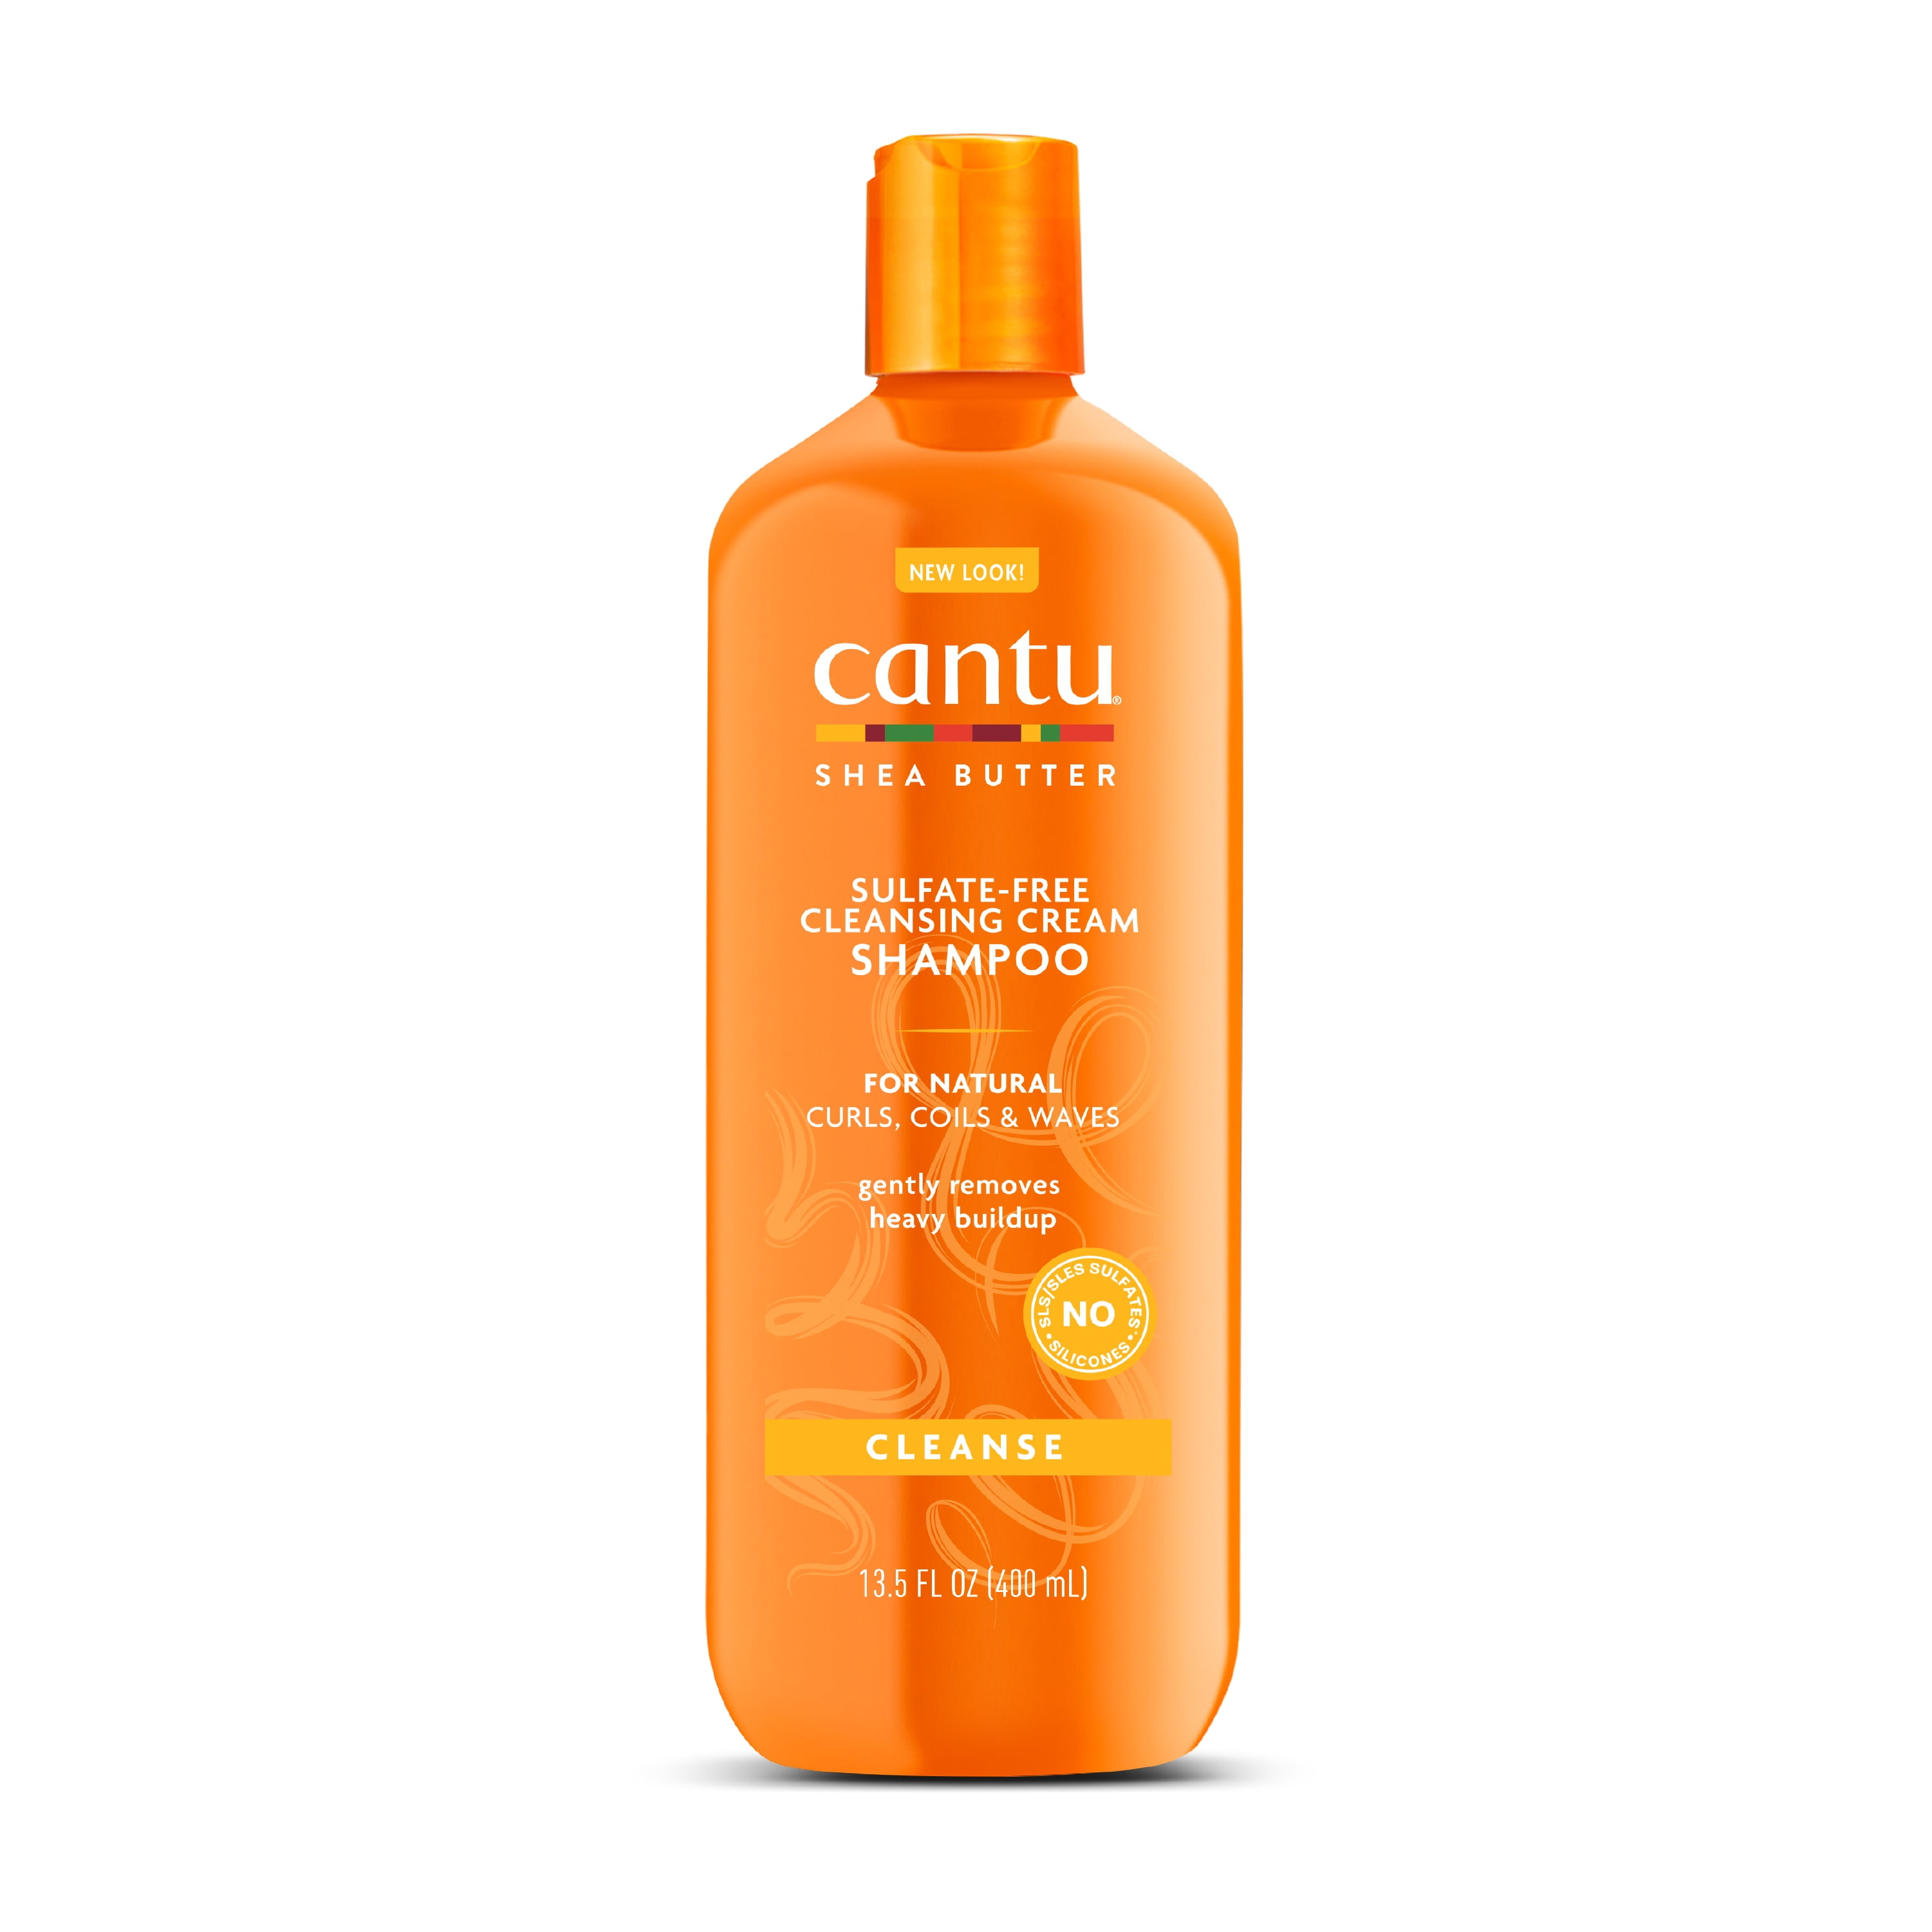 Cantu Sulfate-Free Cleansing Cream Shampoo 13.5 fl oz